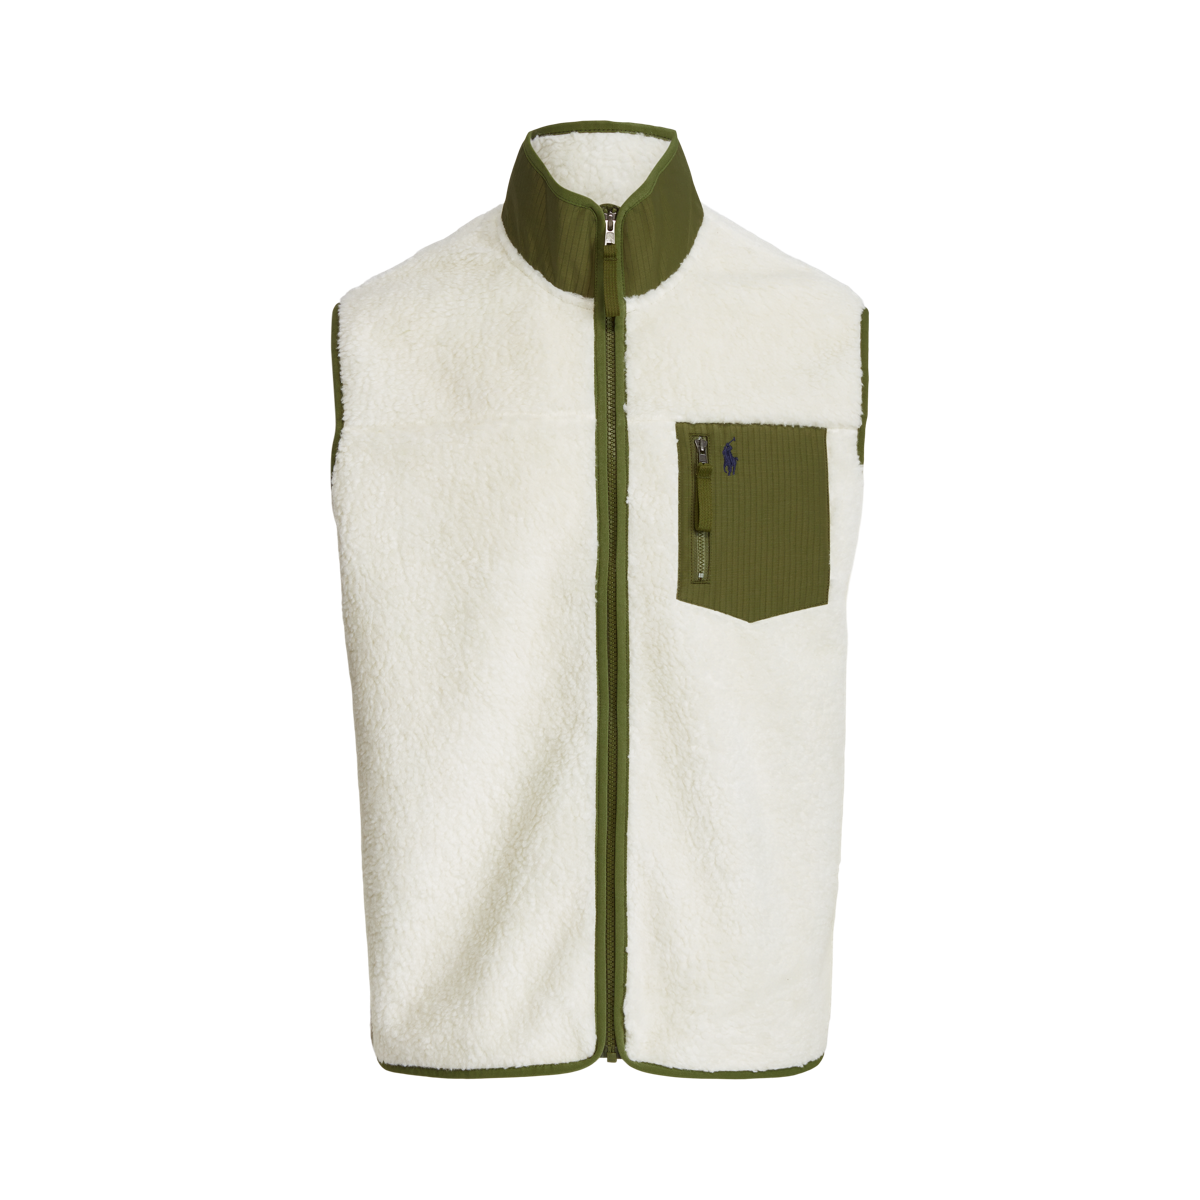 Aprender acerca 36+ imagen polo ralph lauren fleece vest